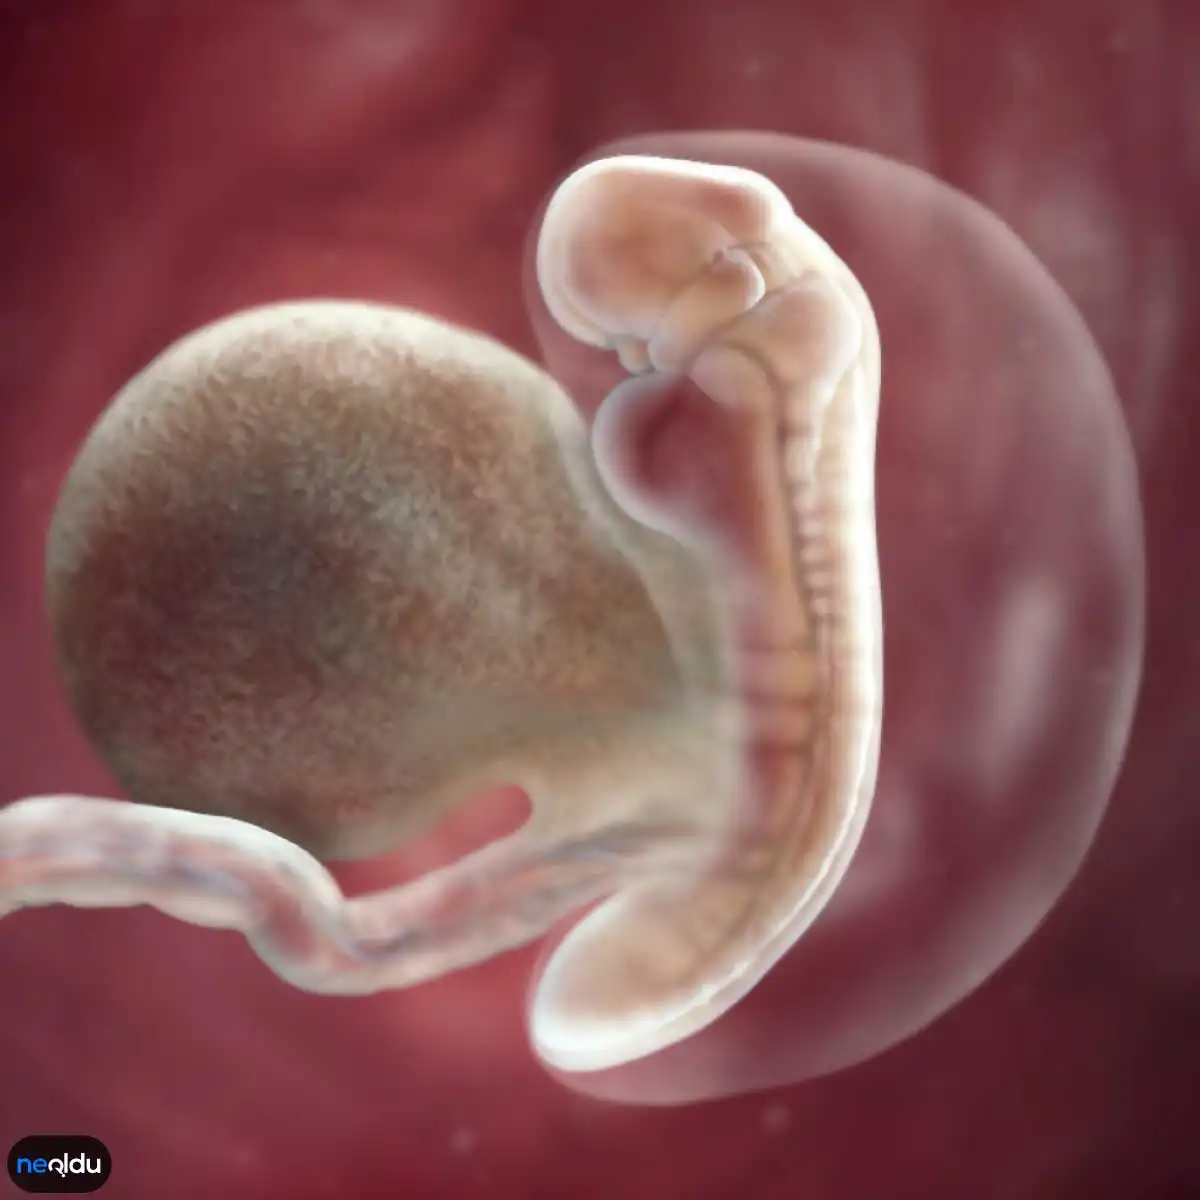 6 эмбриональная неделя. Зародышюш на 6 недели беременности. Эмбрион на 5 неделе беременности. Плод на 4-5 неделе беременности.